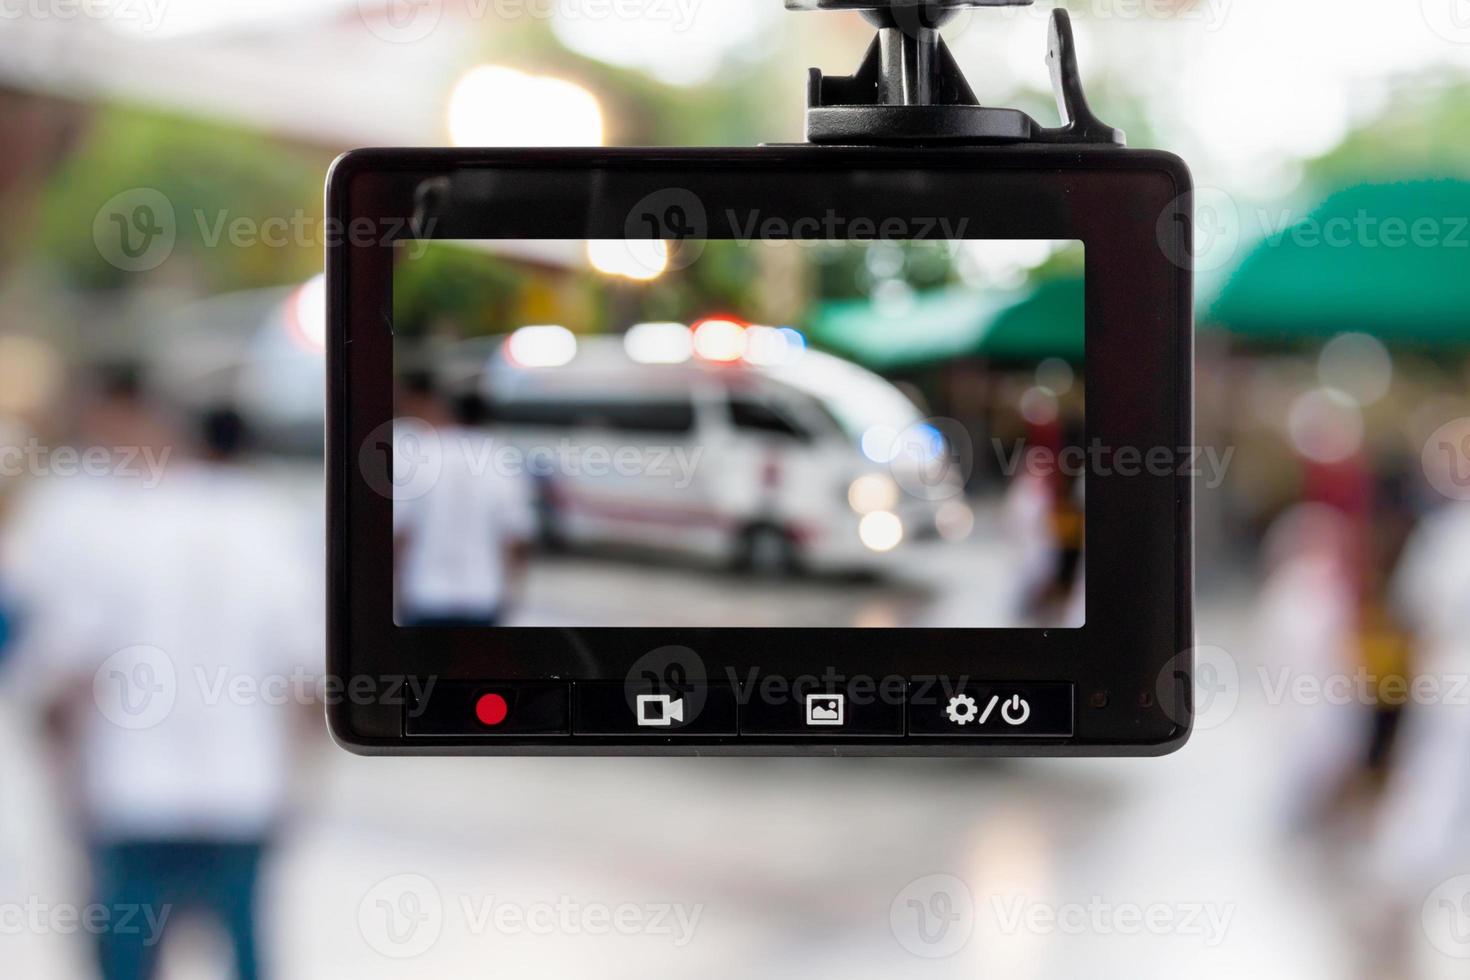 grabadora de video de cámara cctv de coche con ambulancia en la carretera  13025980 Foto de stock en Vecteezy